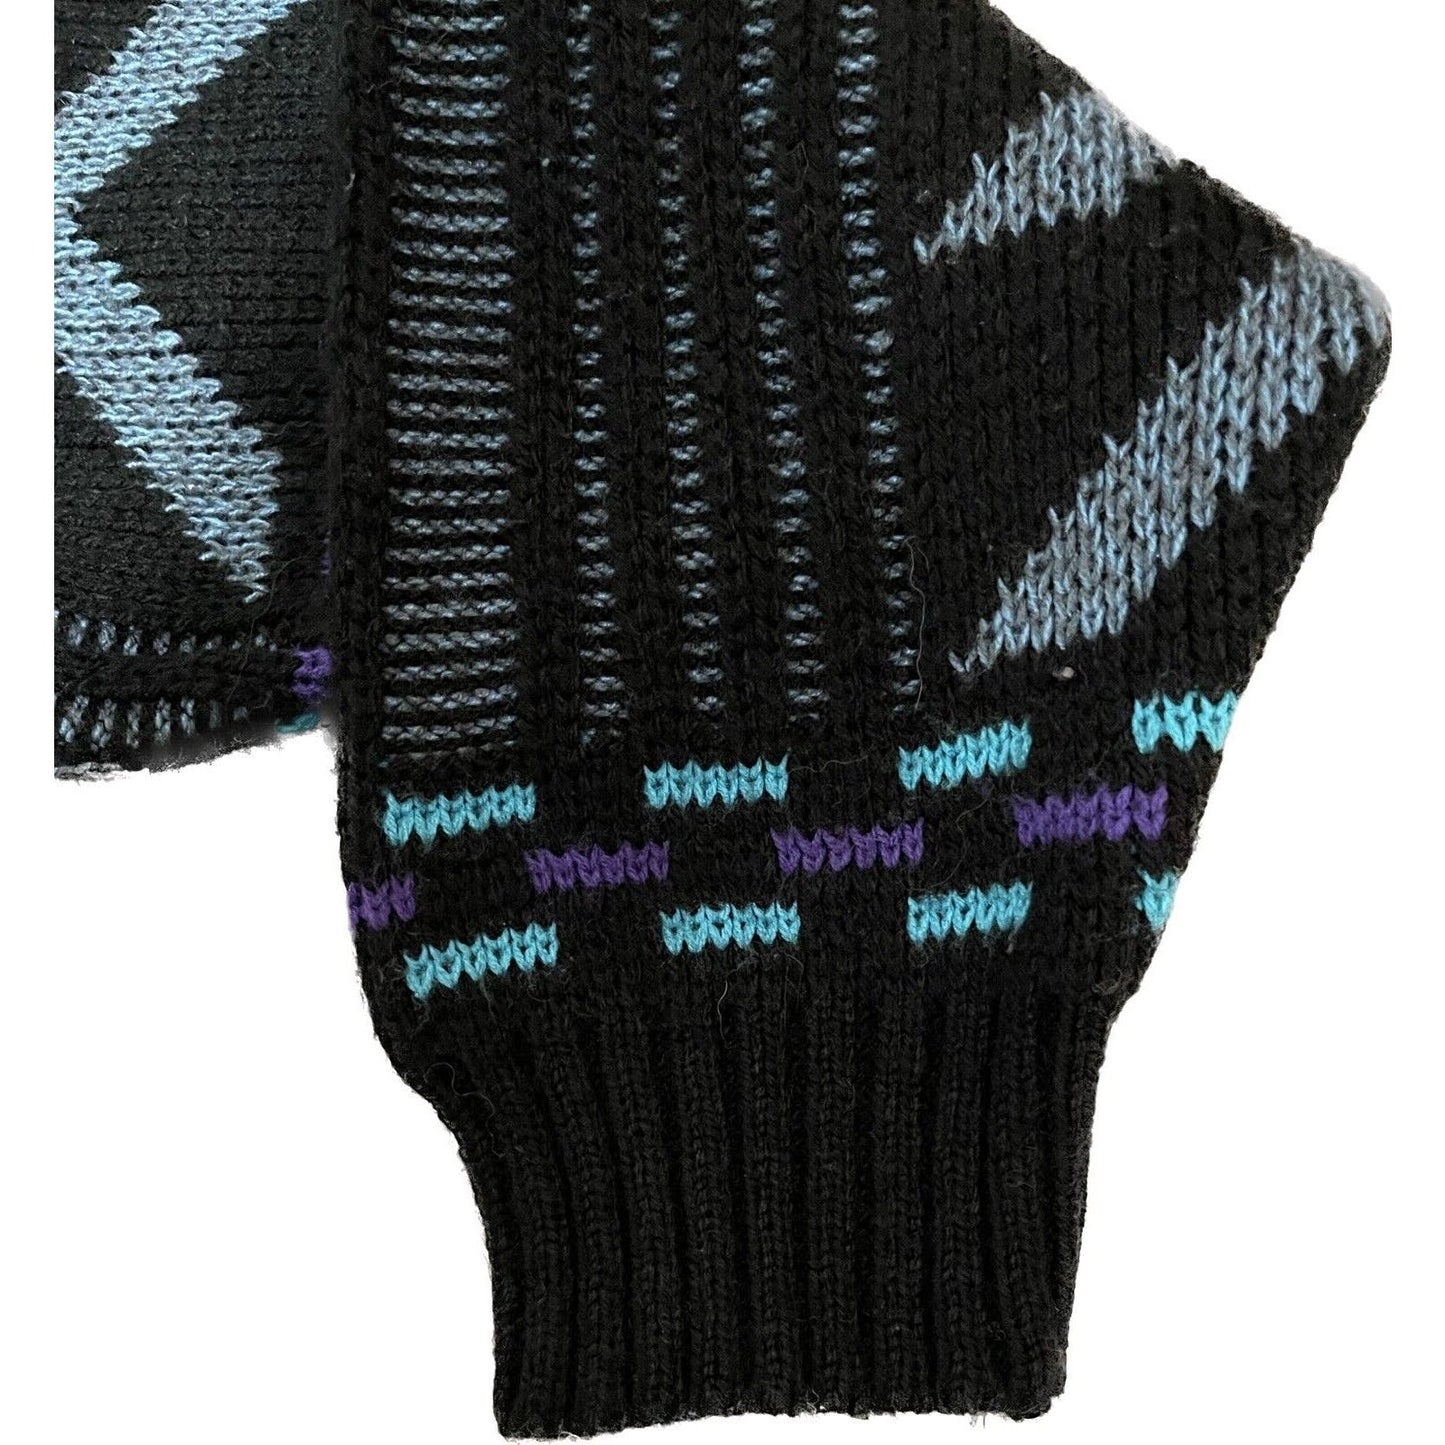 Vintage 1980’s Geometric Adult Medium Knit Pullover Sweater Teal Black Purple